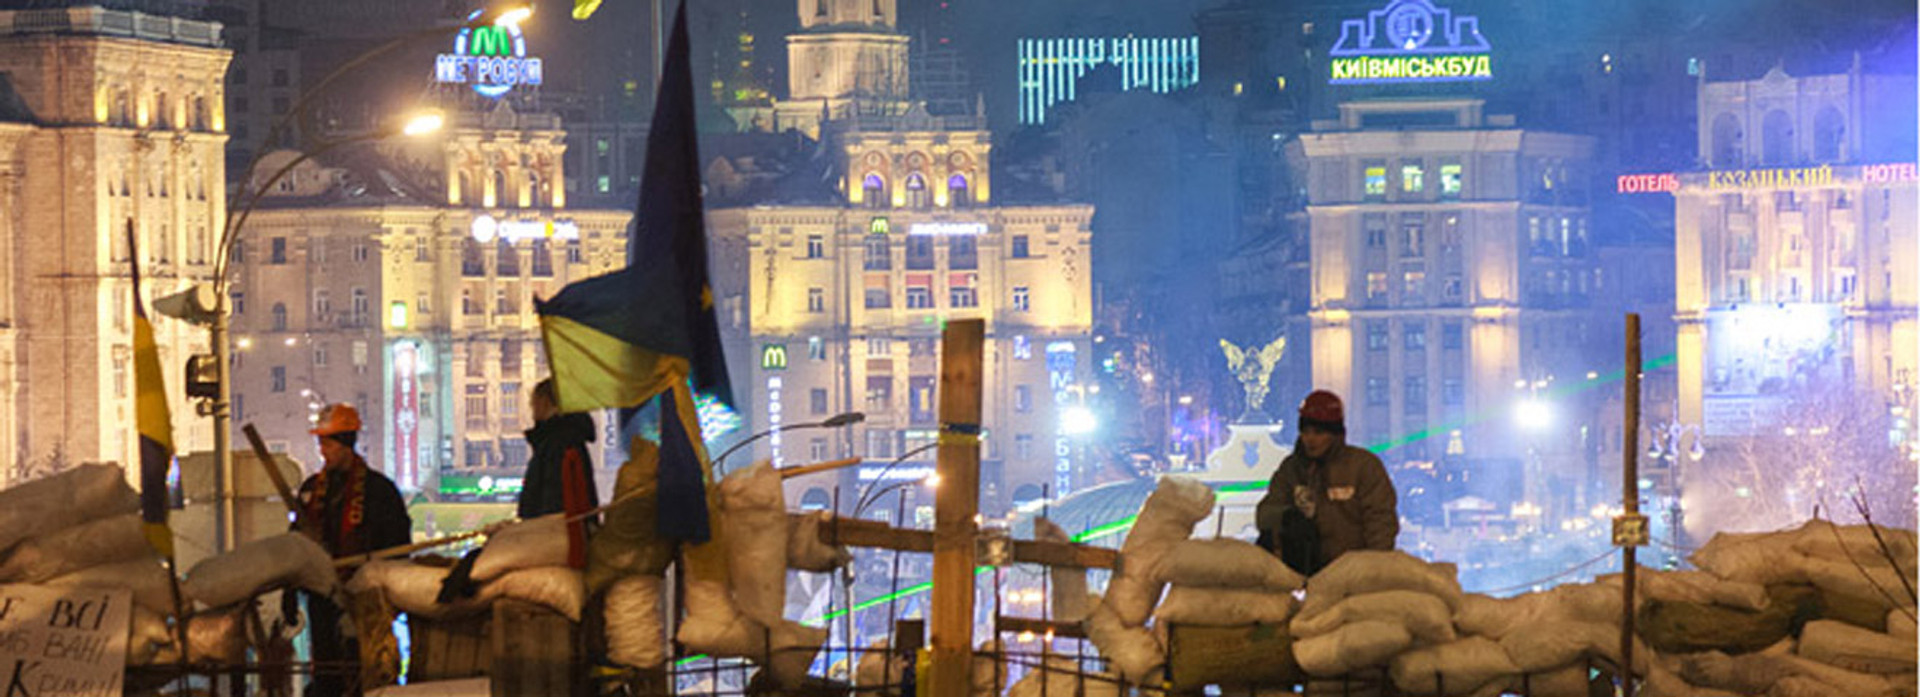 Що ви знаєте про українські революції? ТЕСТ